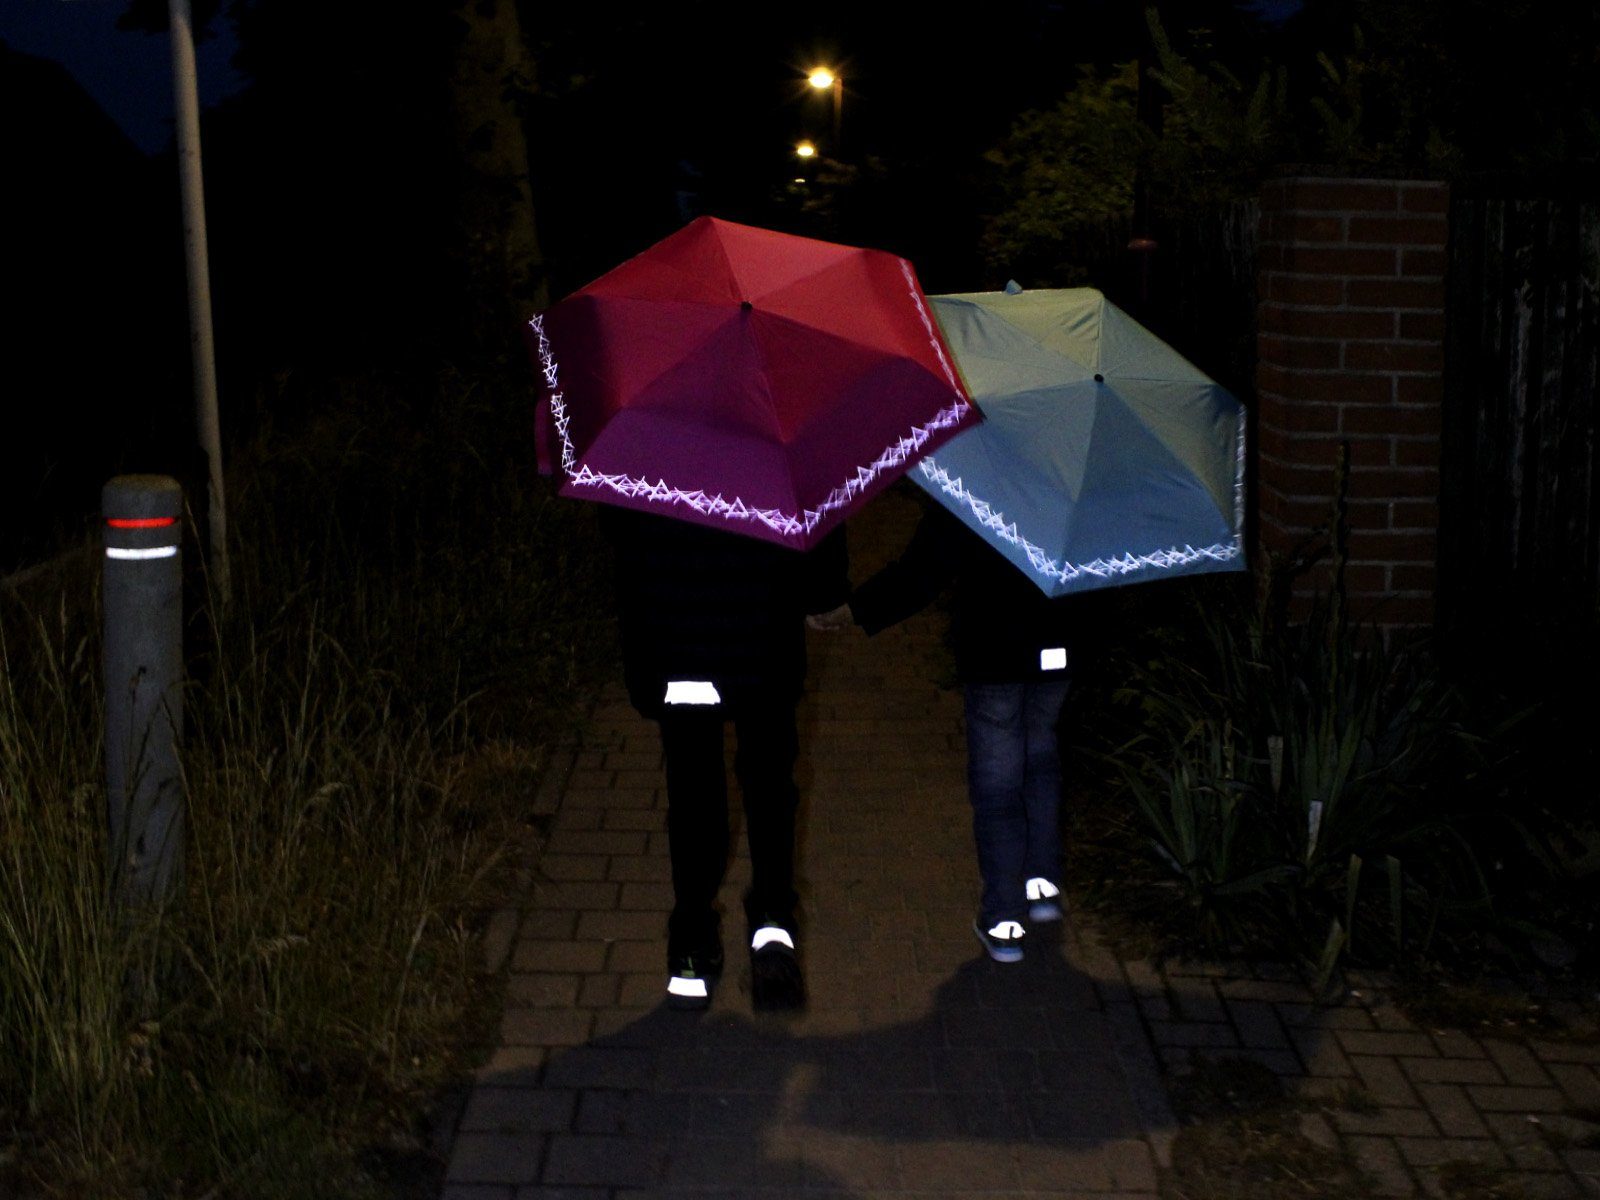 mehr Kinderschirm Taschenregenschirm reflective Knirps® für pink auf Reflexborte, mit Sicherheit 4Kids dem Schulweg